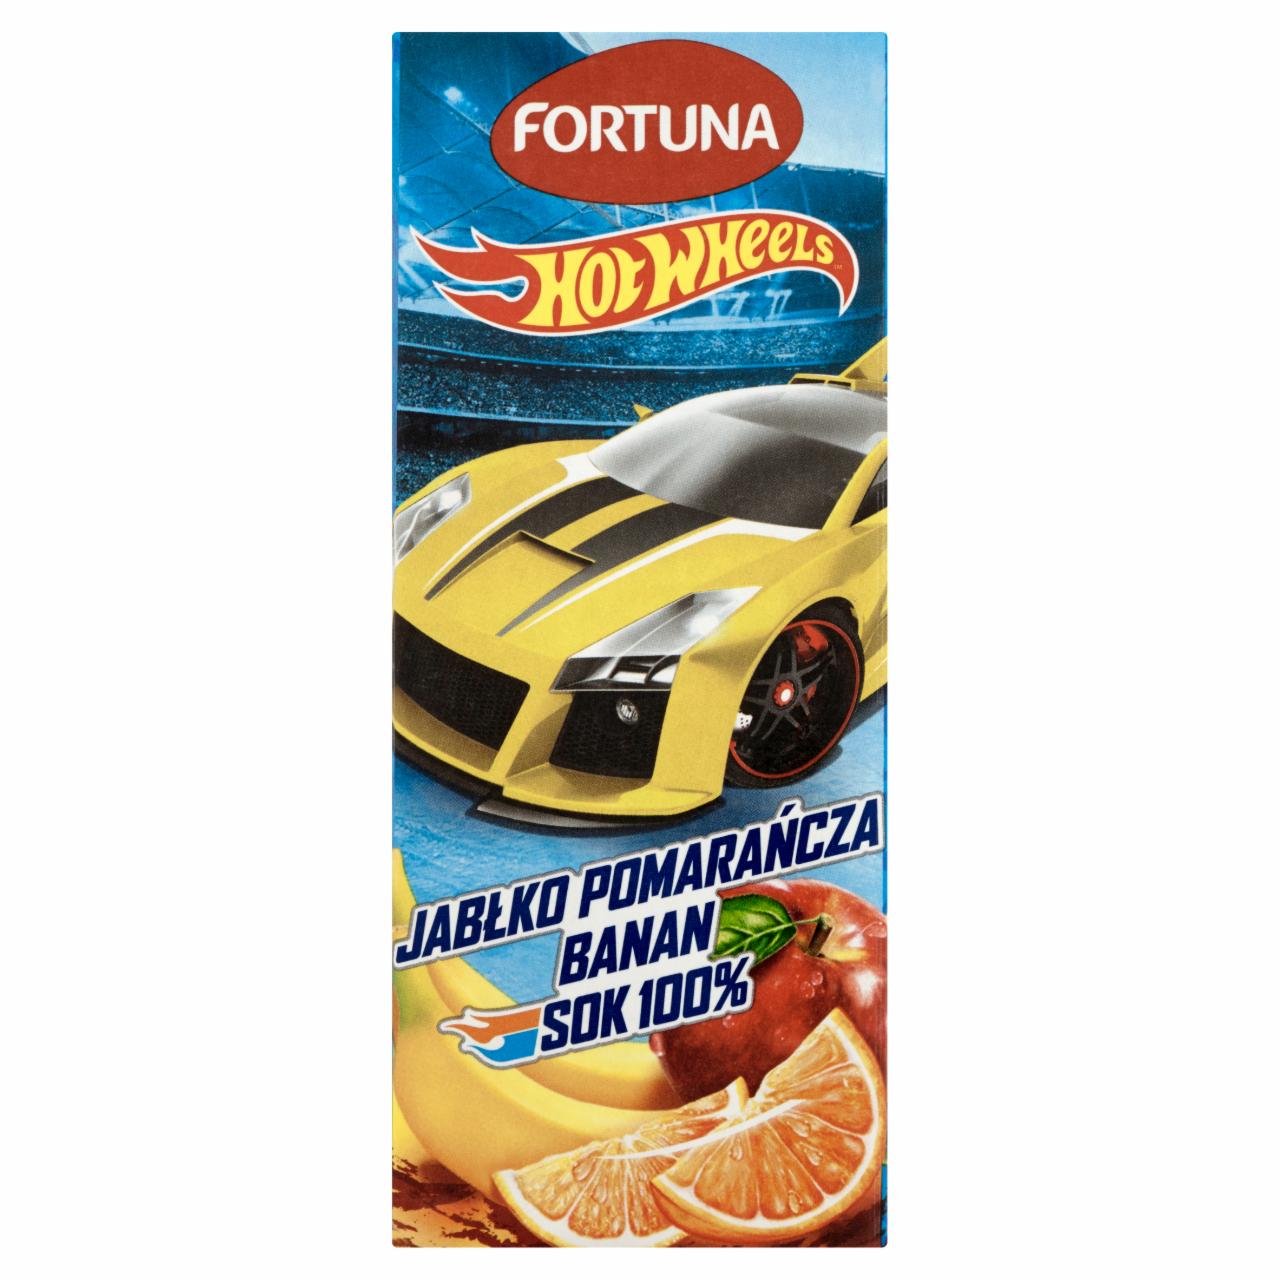 Zdjęcia - Fortuna Hot Wheels Jabłko pomarańcza banan Sok 100% 200 ml